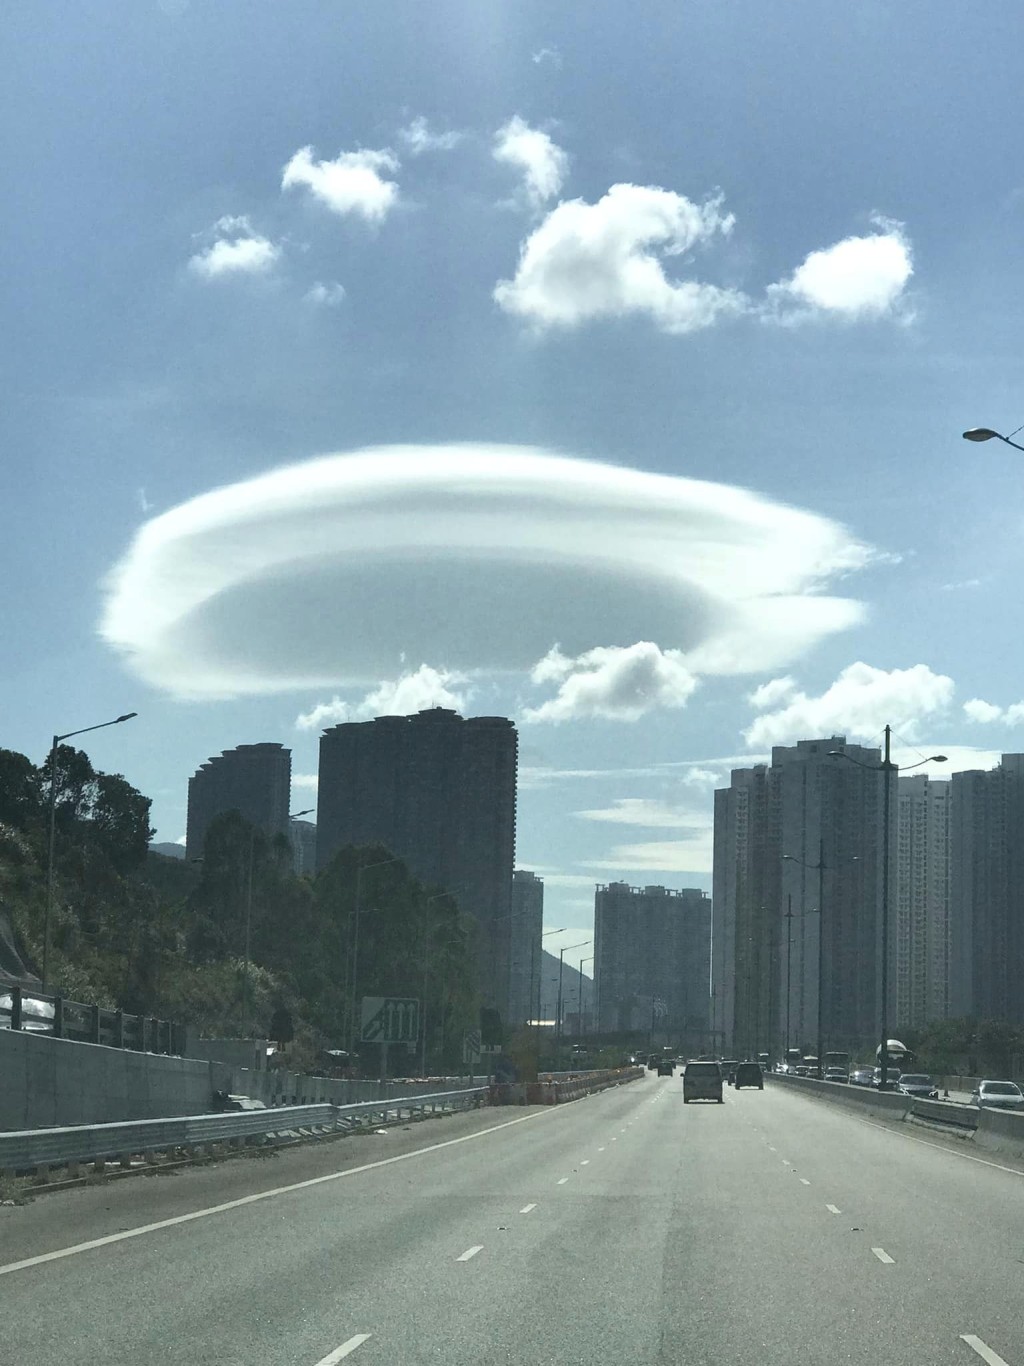 荚状云 （Lenticularis），由于形状像一块或多块凸透镜，故有时会被误会为飞碟或不明飞行物体，所以亦俗称「飞碟云」。。fb「香港风景摄影会」Chan Wai Nang摄